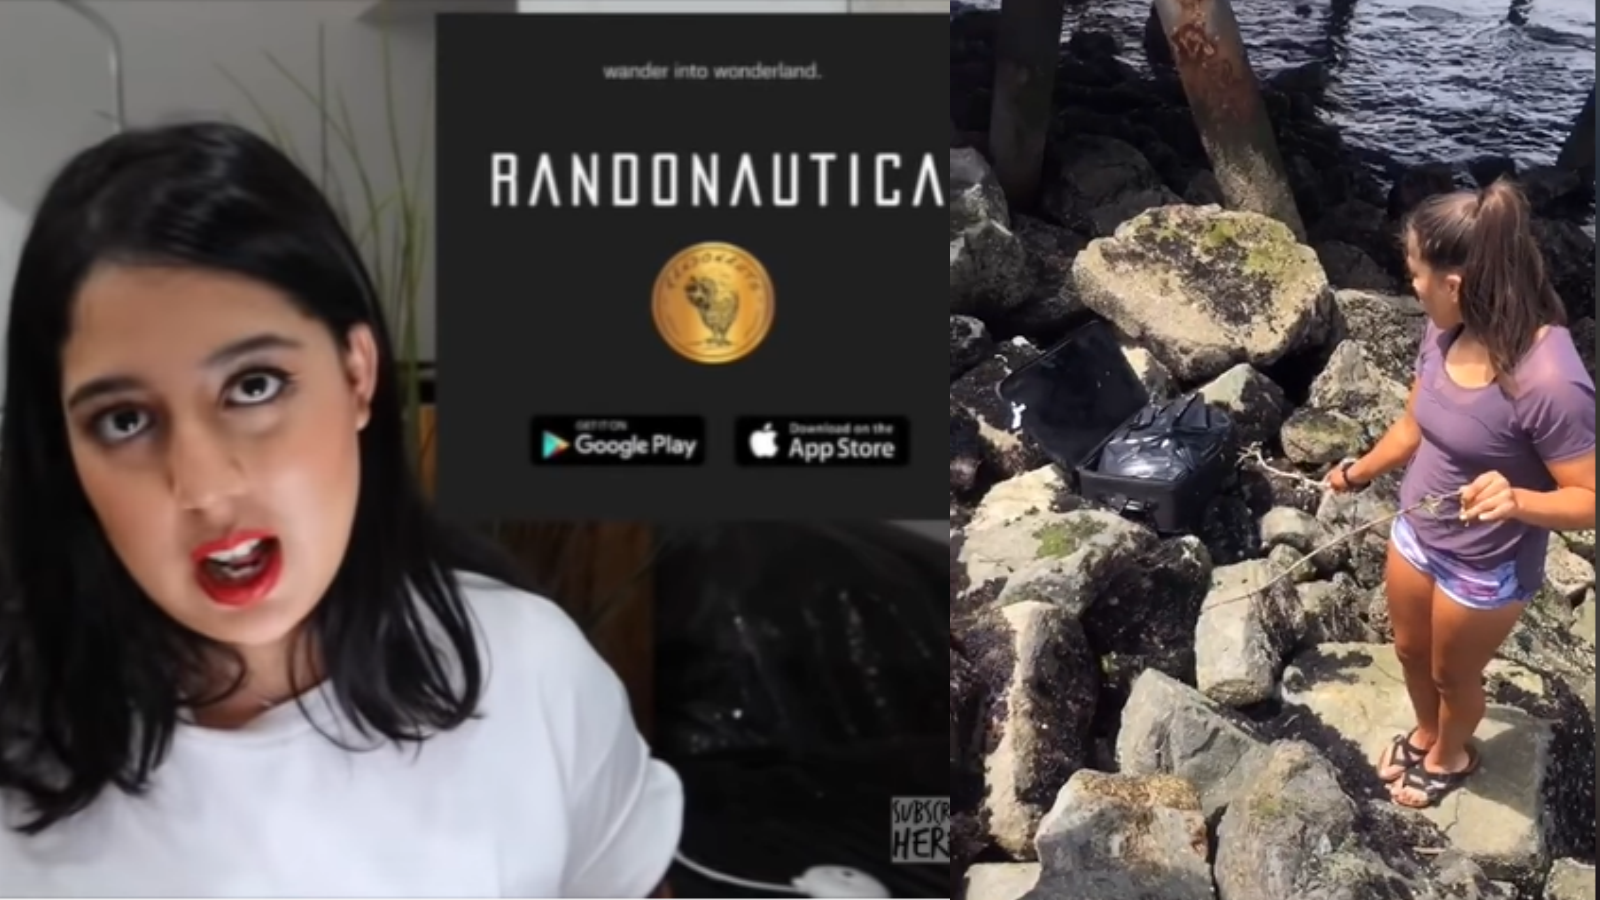 Nessie Judge Ungkap Misteri Apps Randonautica, Viral di TikTok karena Penemuan Mayat